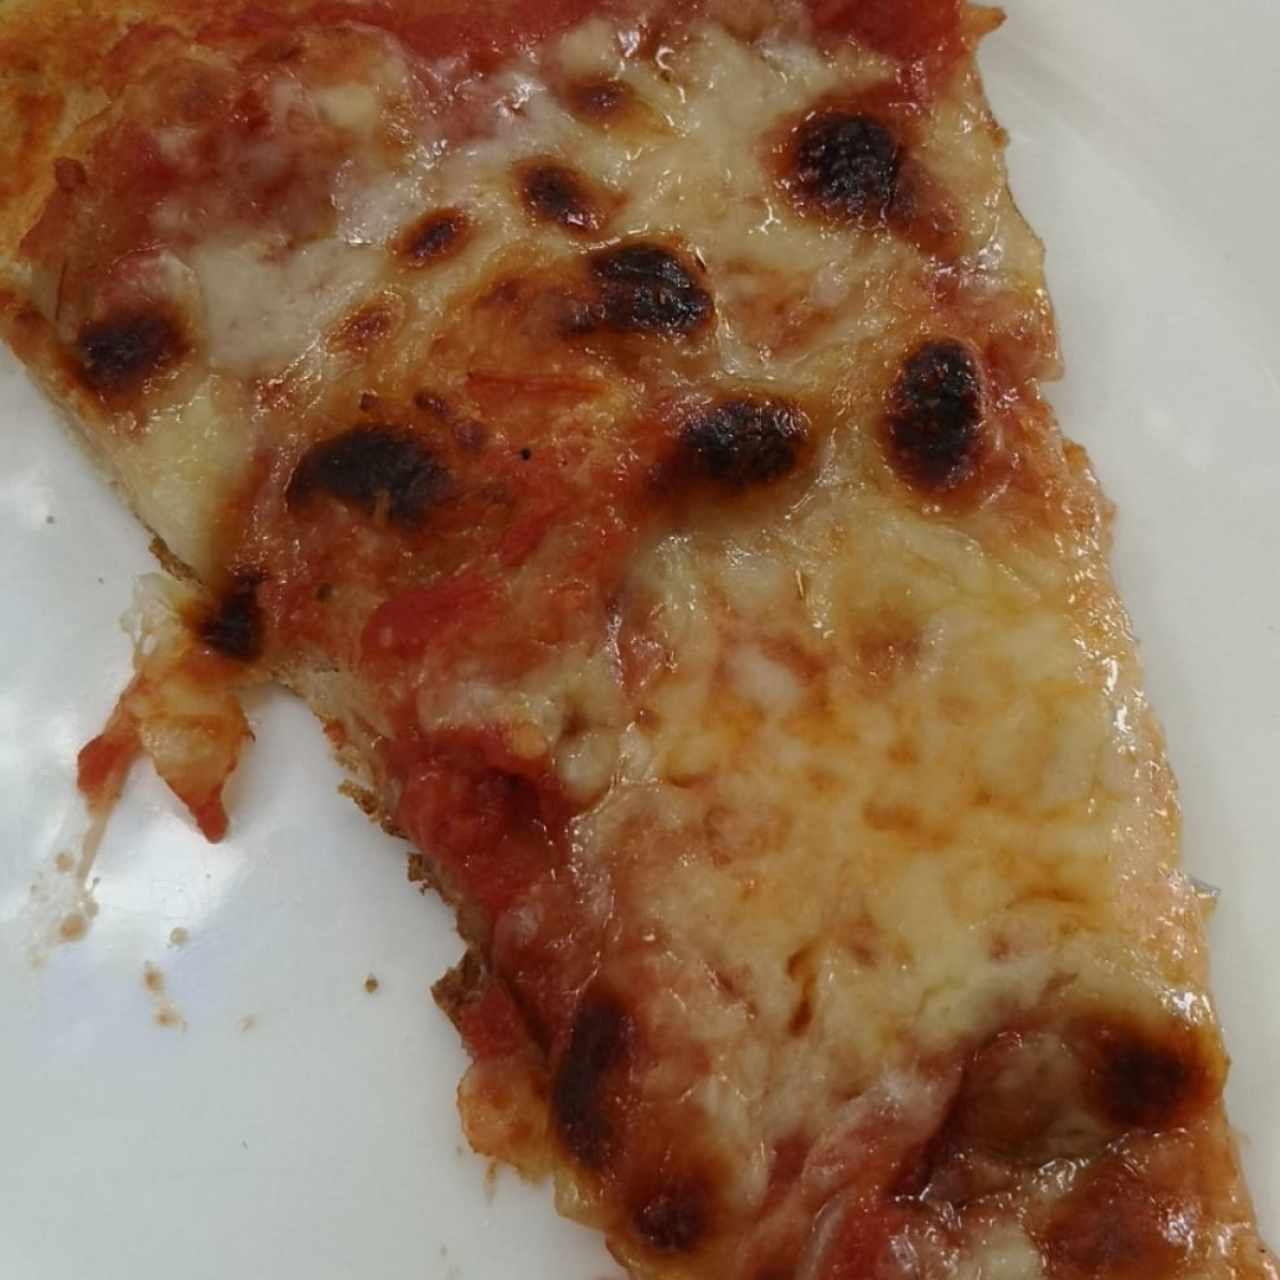 pizza de queso 